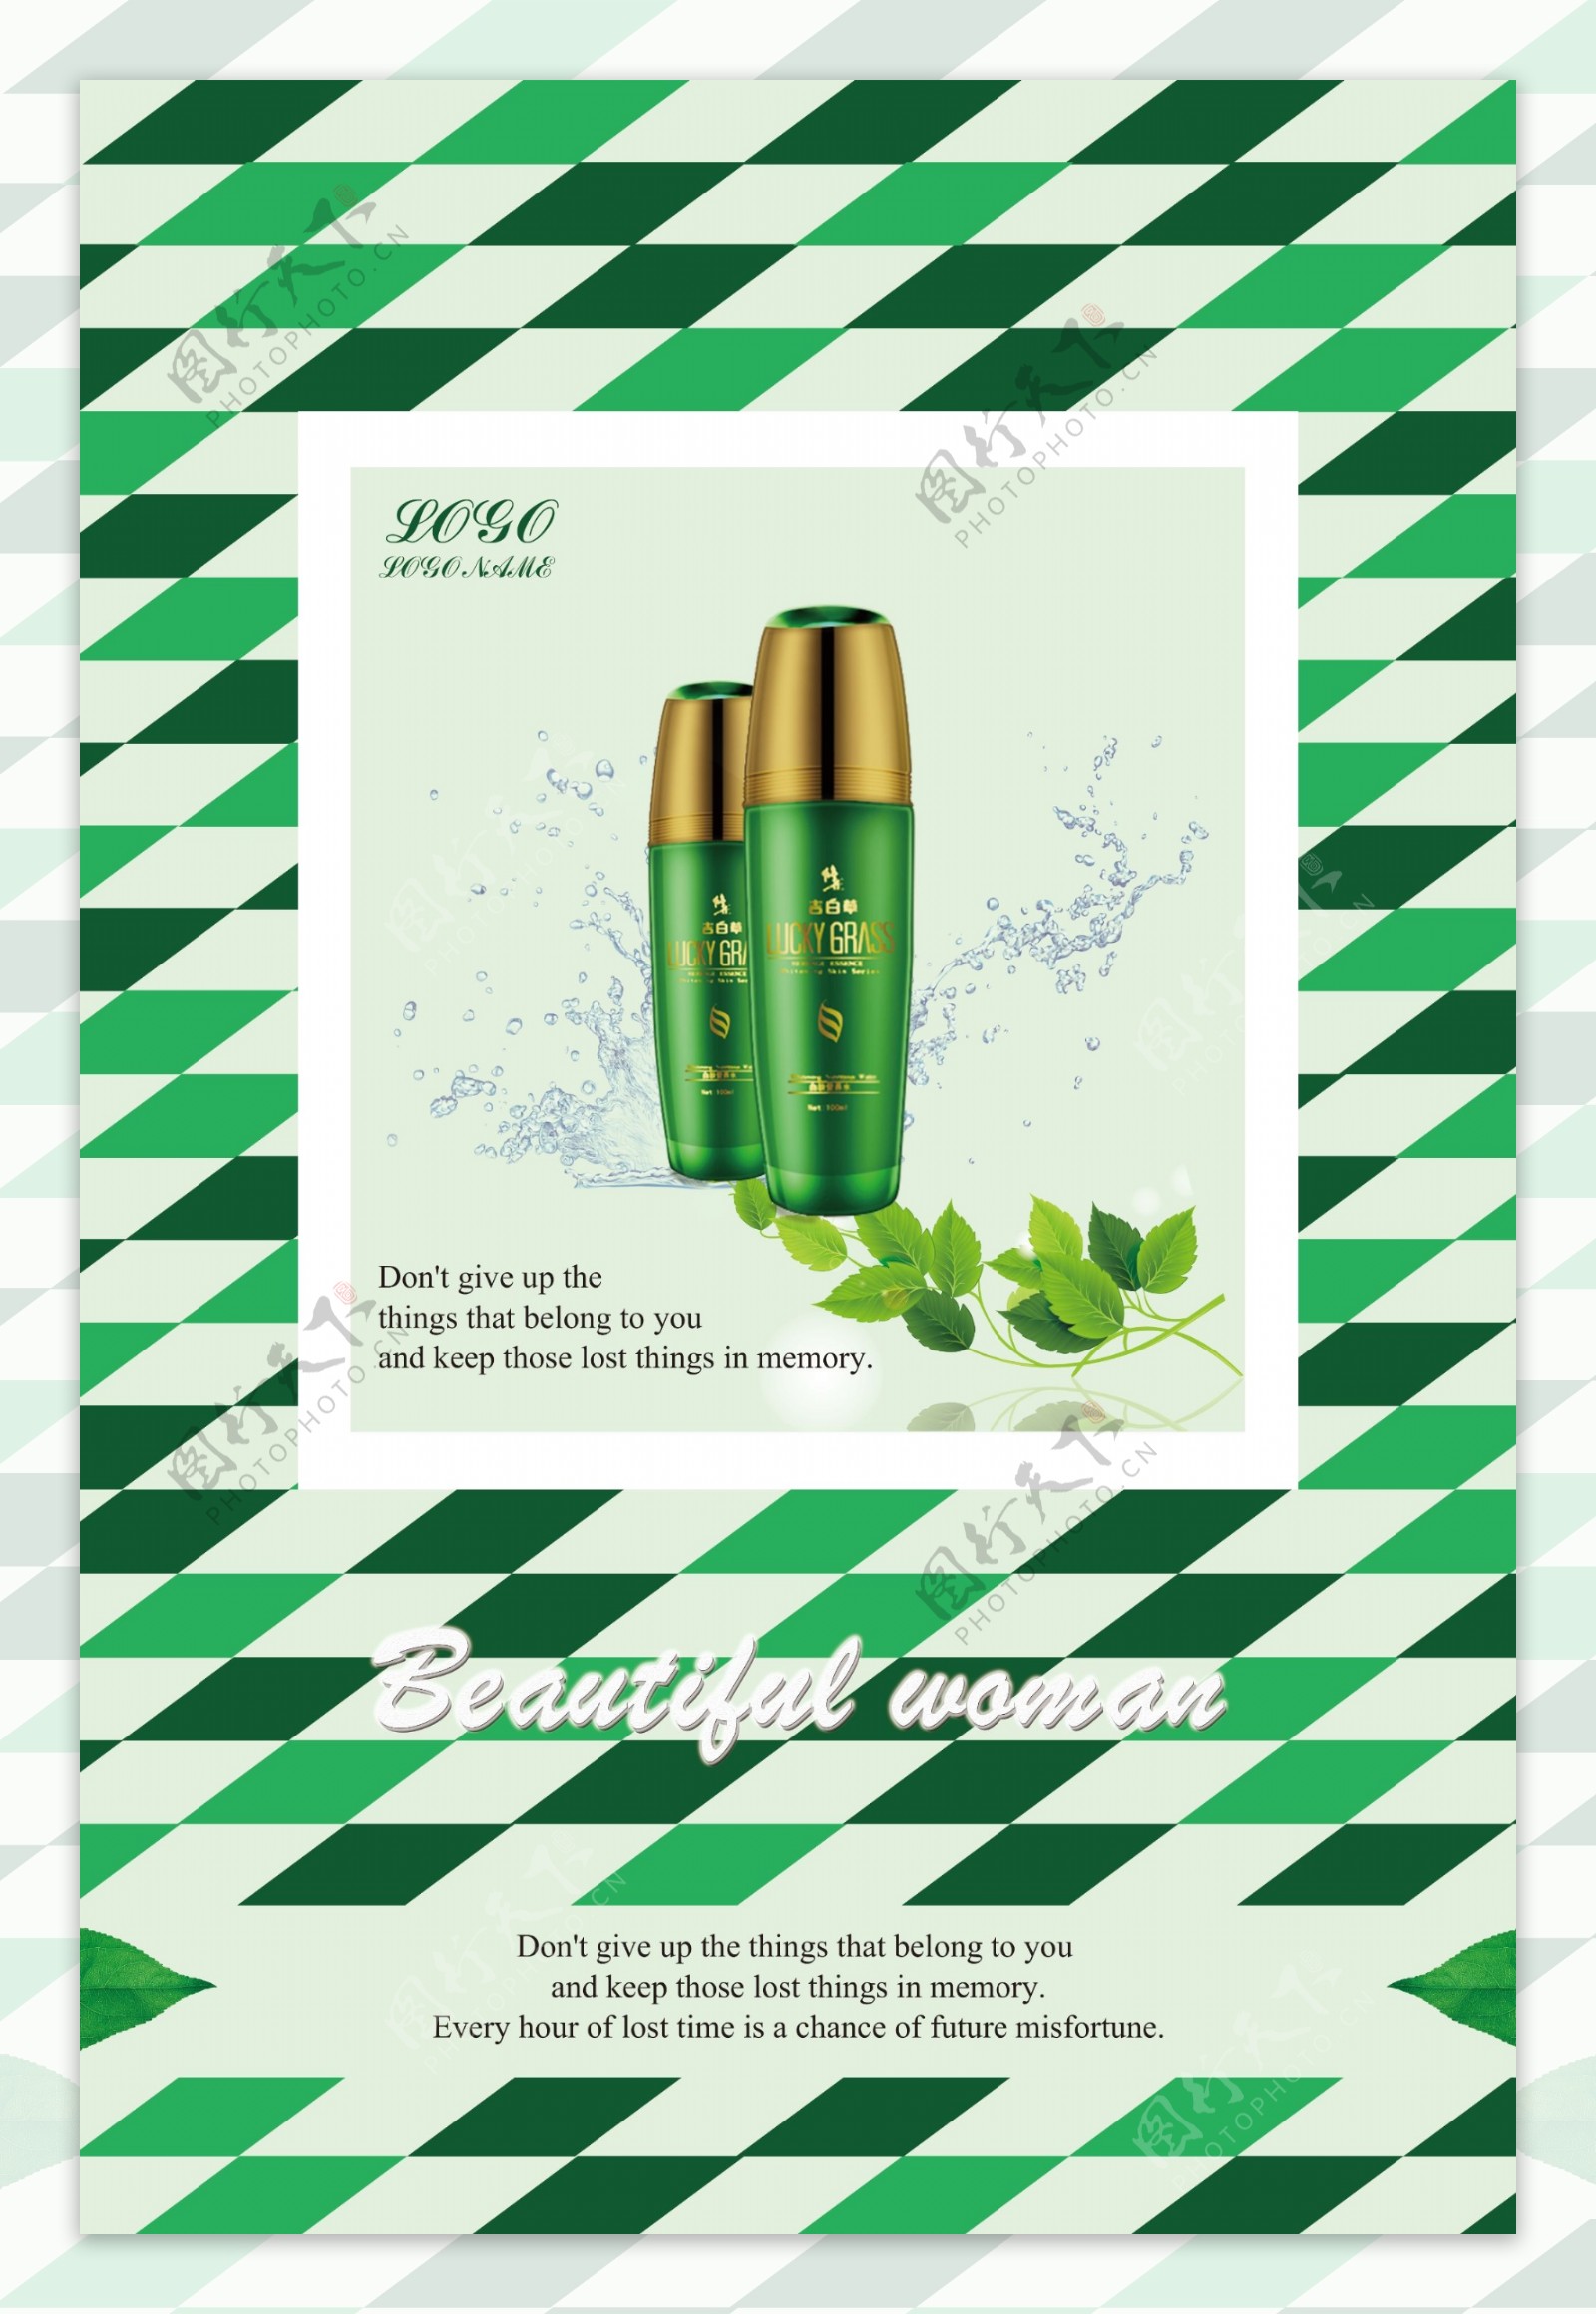 绿色化妆品海报